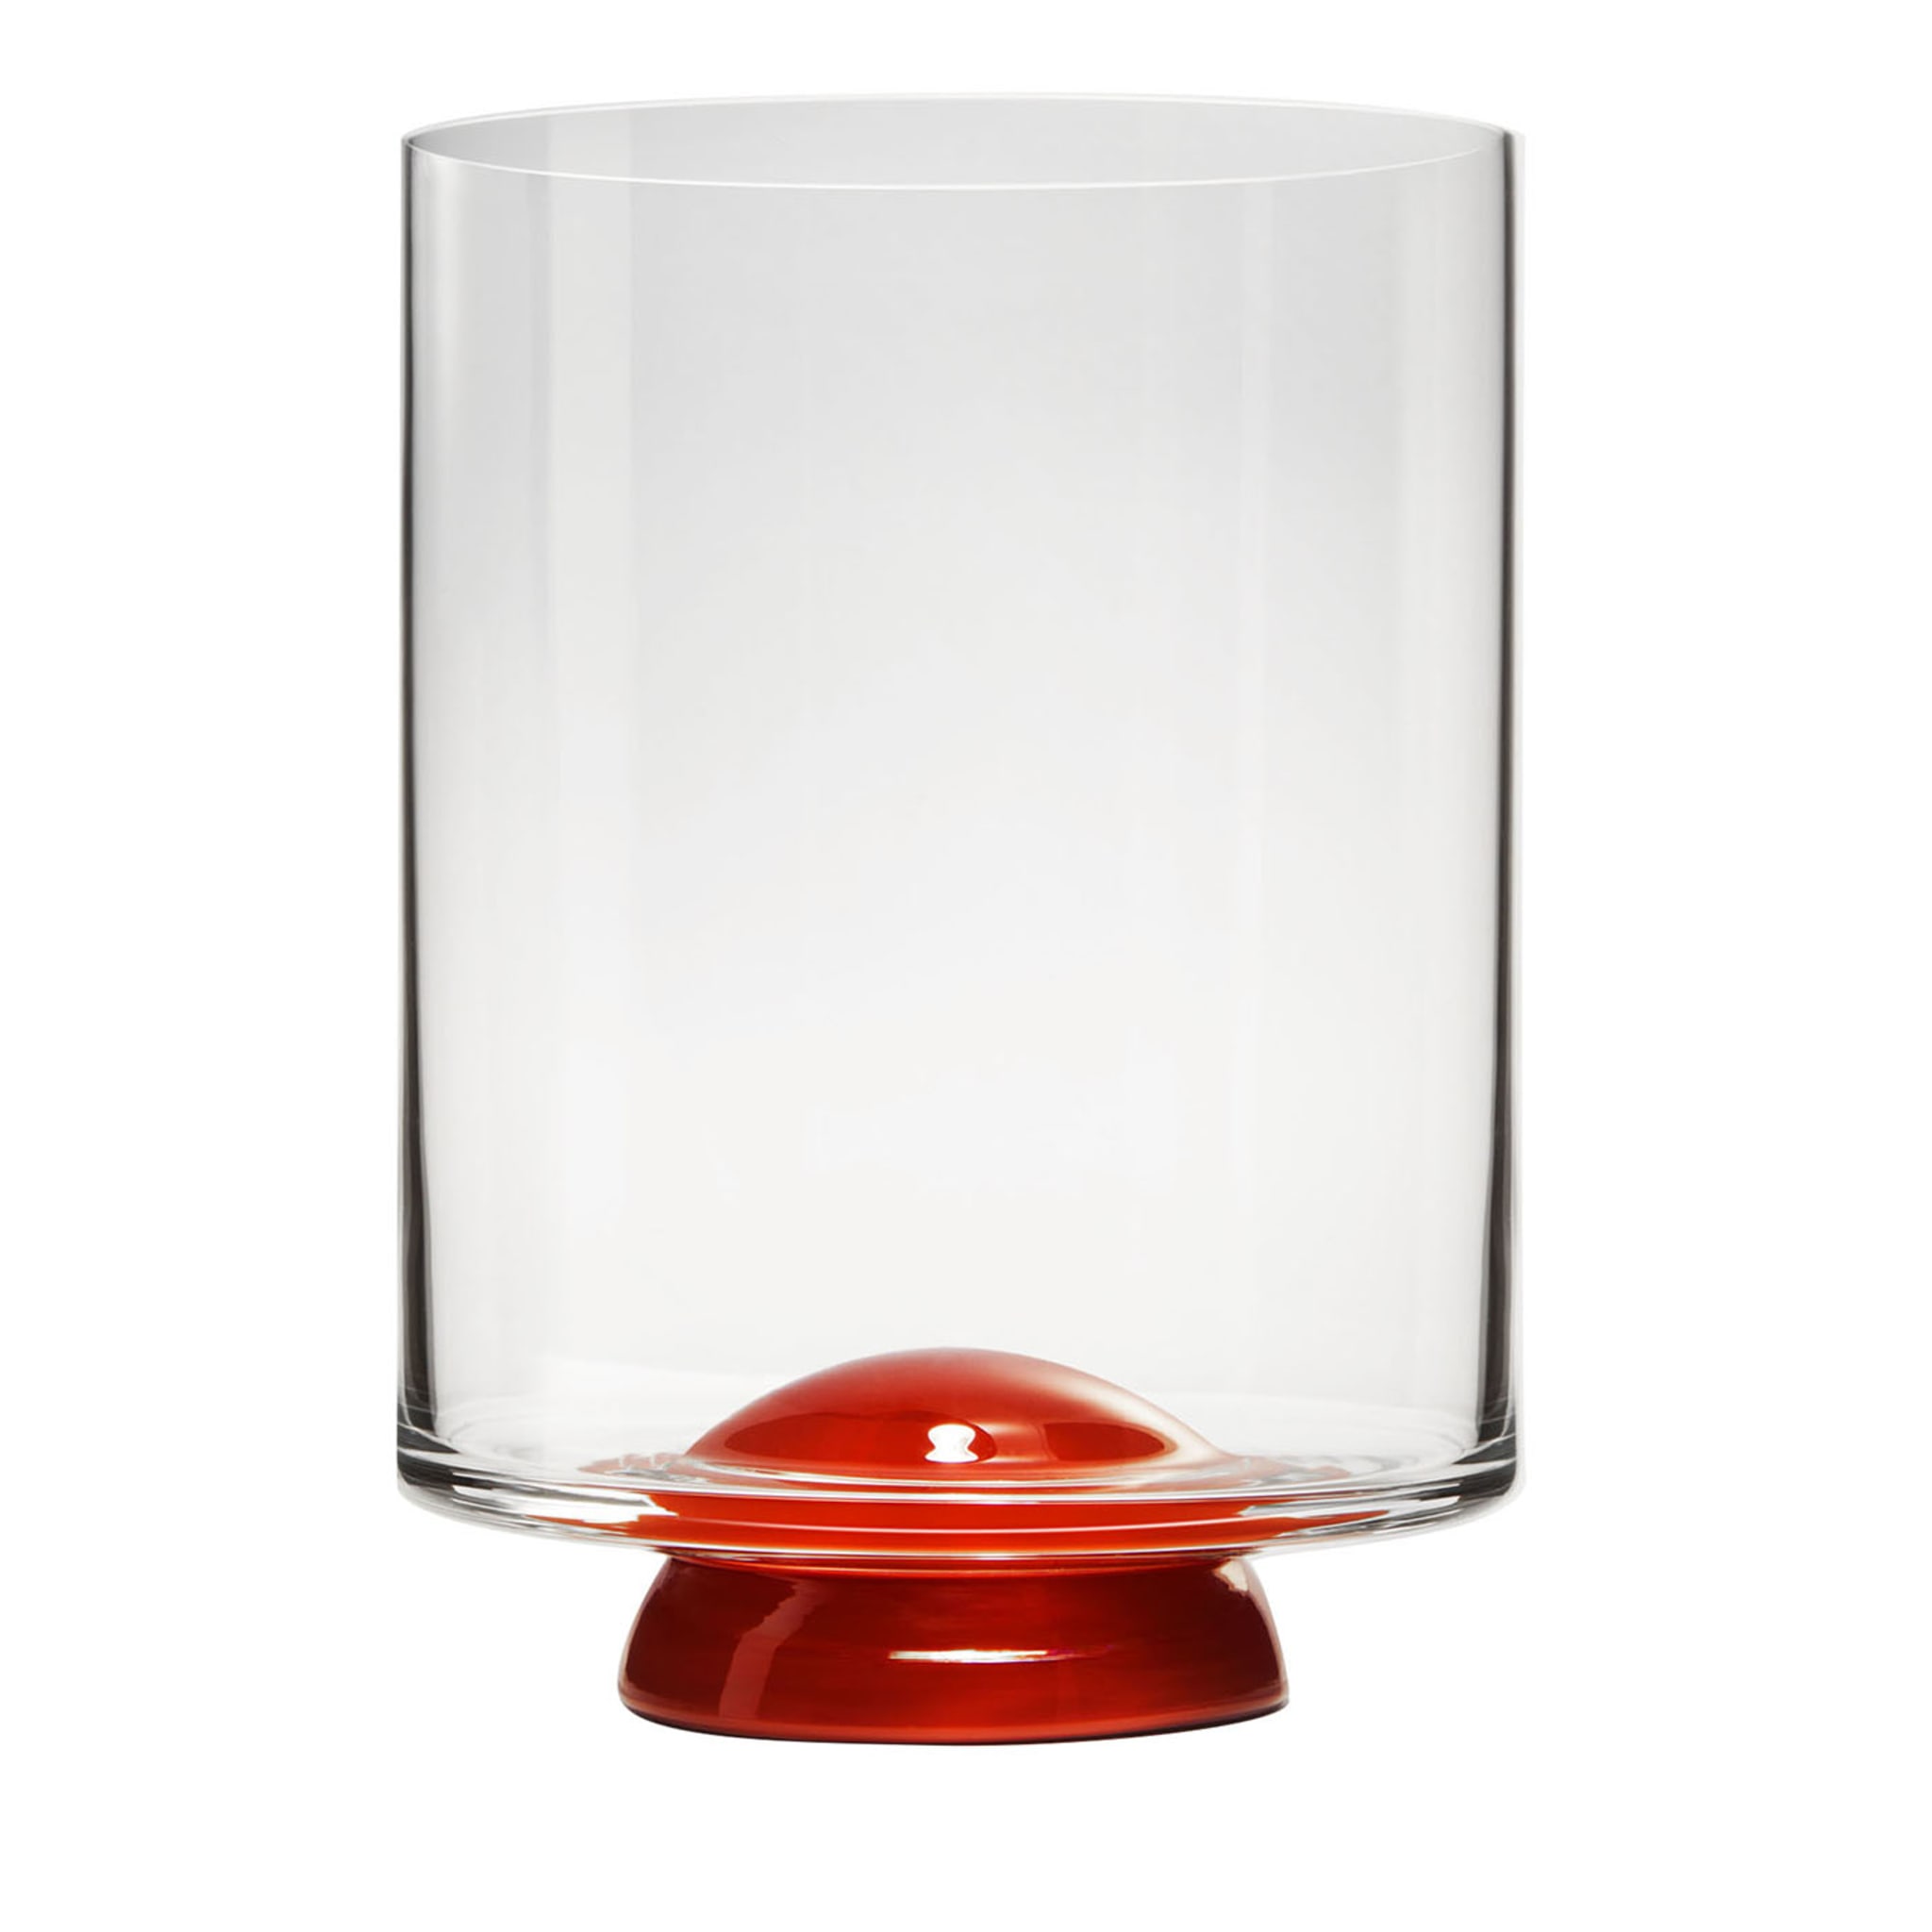 Punto rojo y cristal transparente de Giovanni Patalano - Vista principal